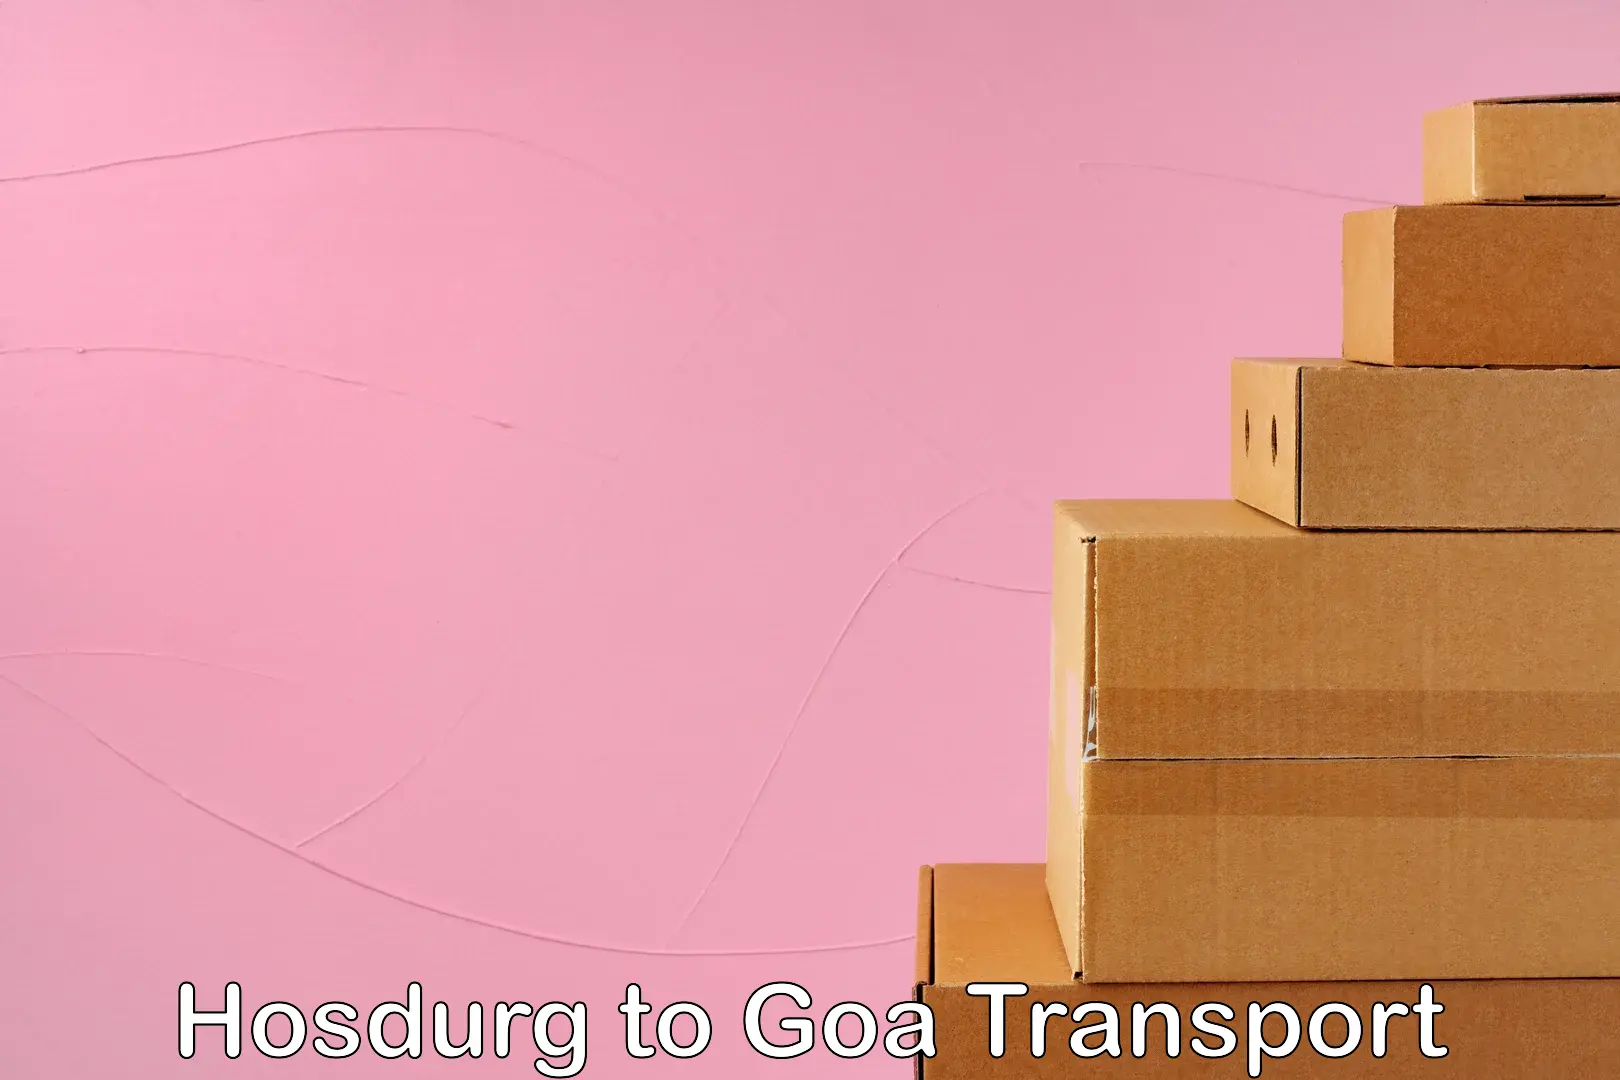 International cargo transportation services Hosdurg to Mormugao Port